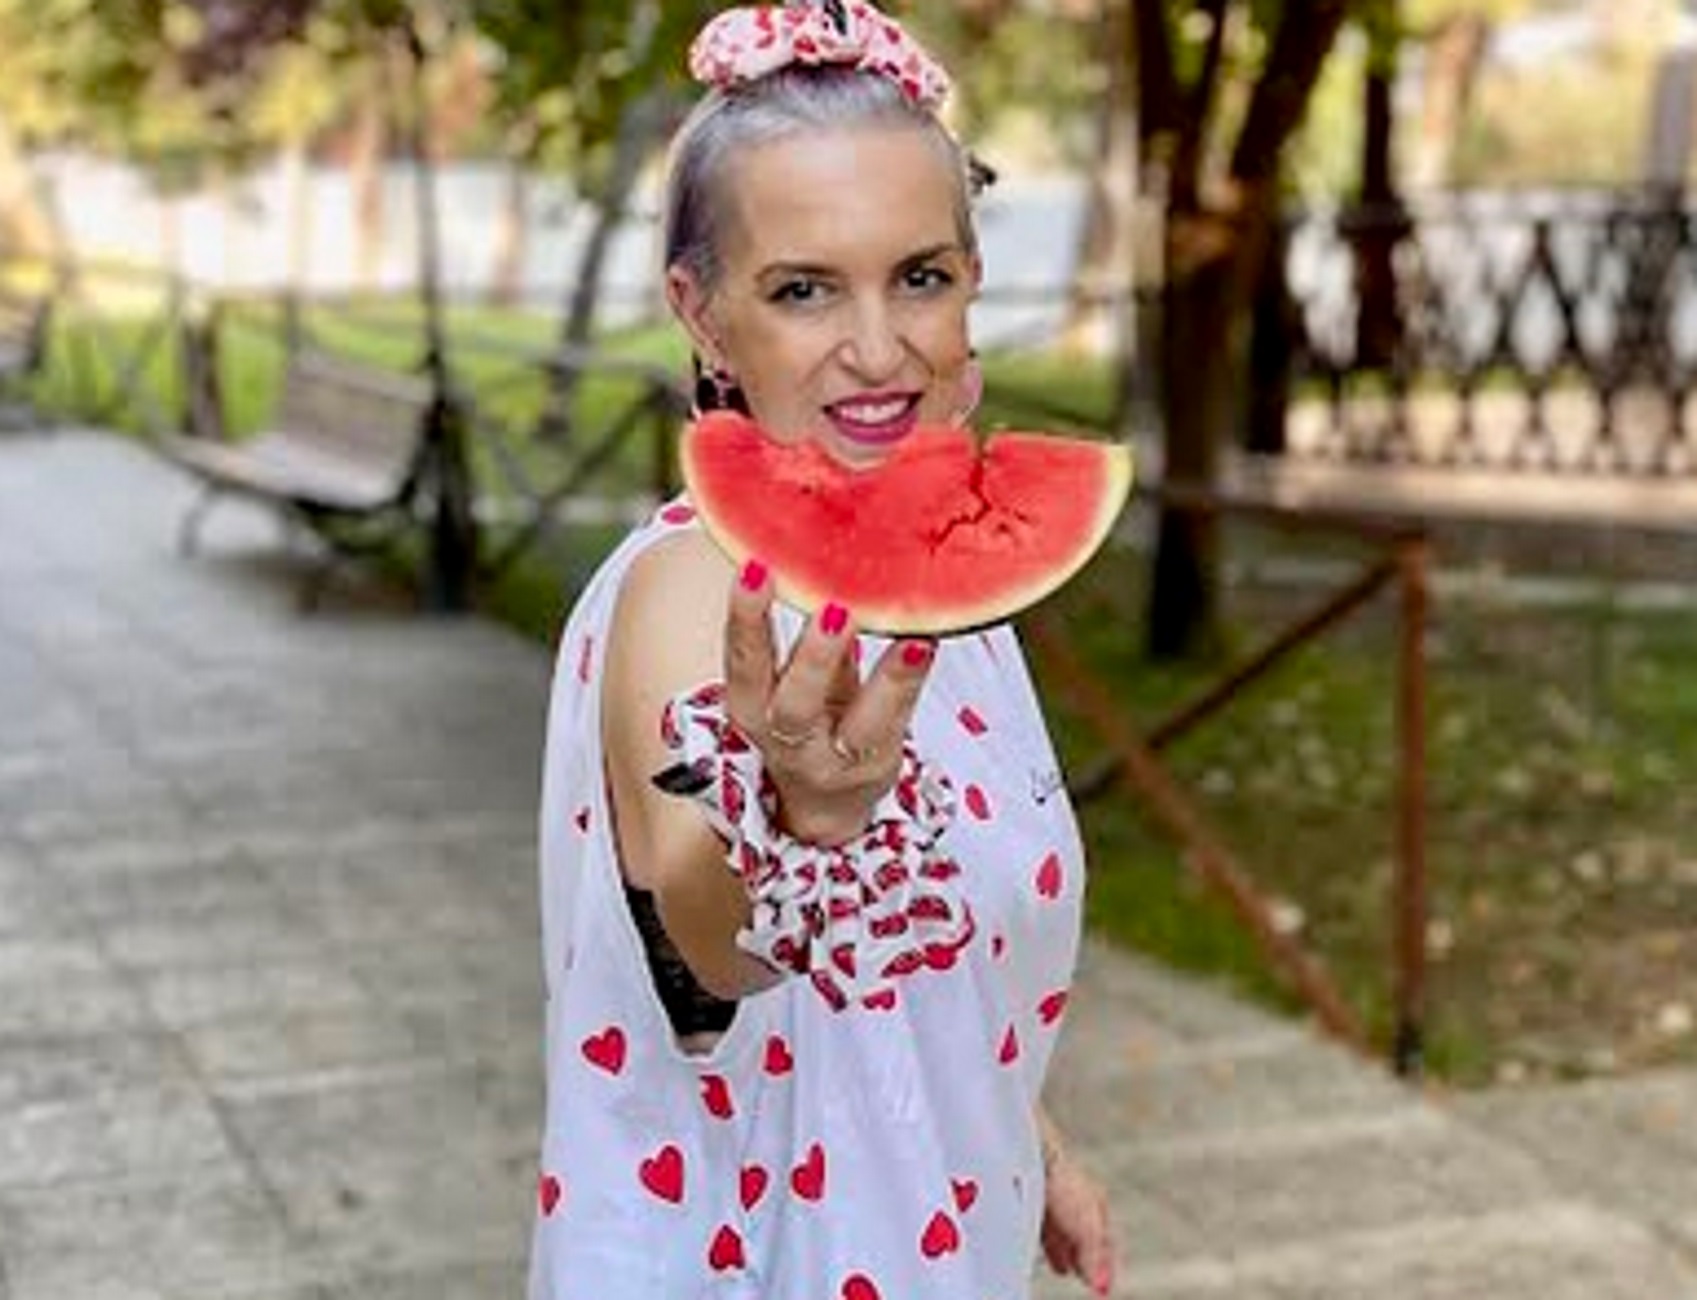 Θεσσαλονίκη: Η νεαρή κομμώτρια έκανε πράξη το μεγάλο της όνειρο και πλέον ποζάρει γεμάτη ευτυχία